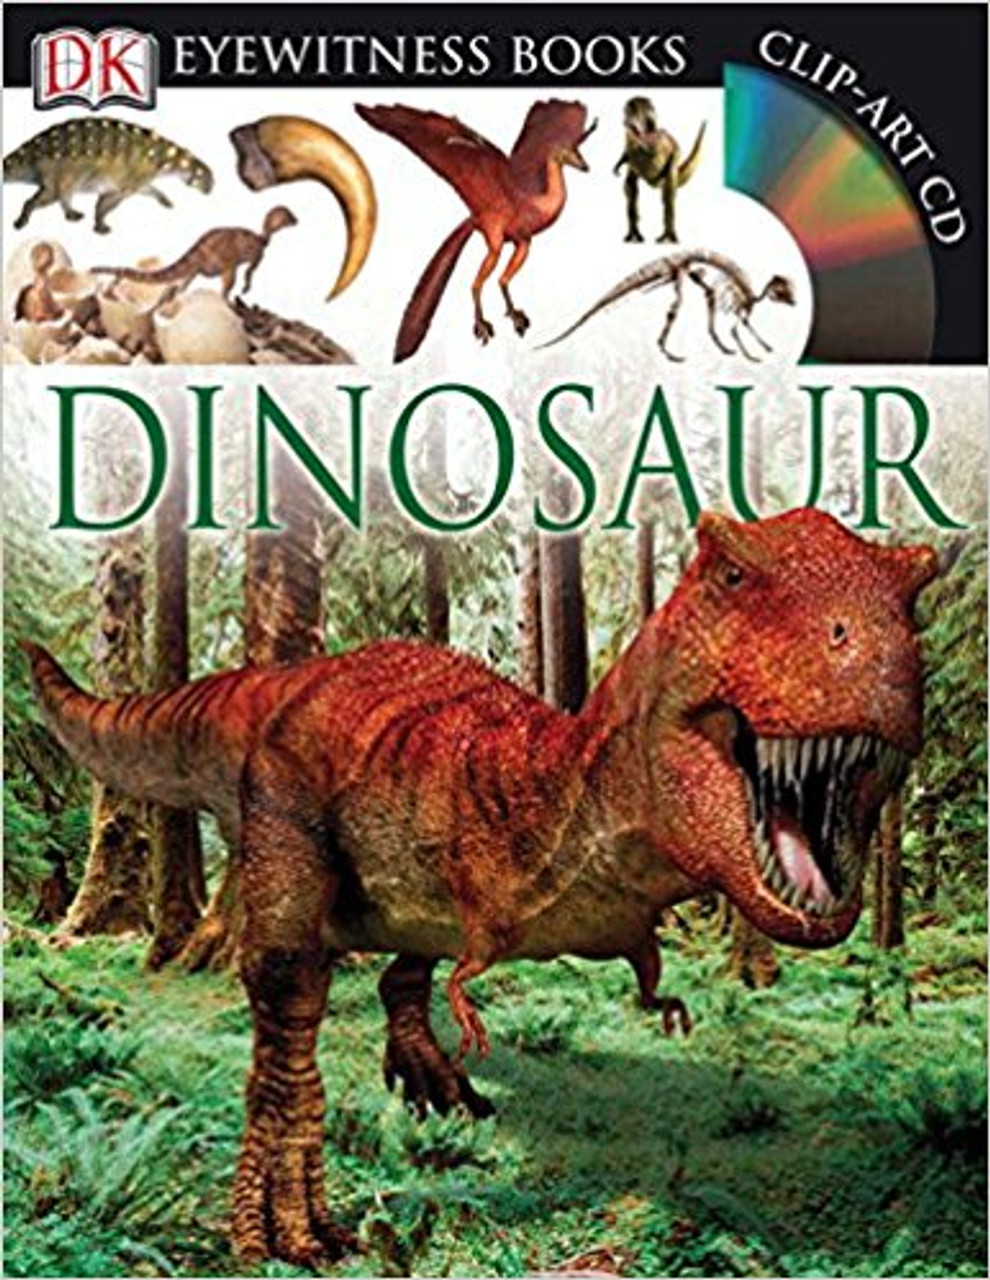 Dinosaur by David Lambert